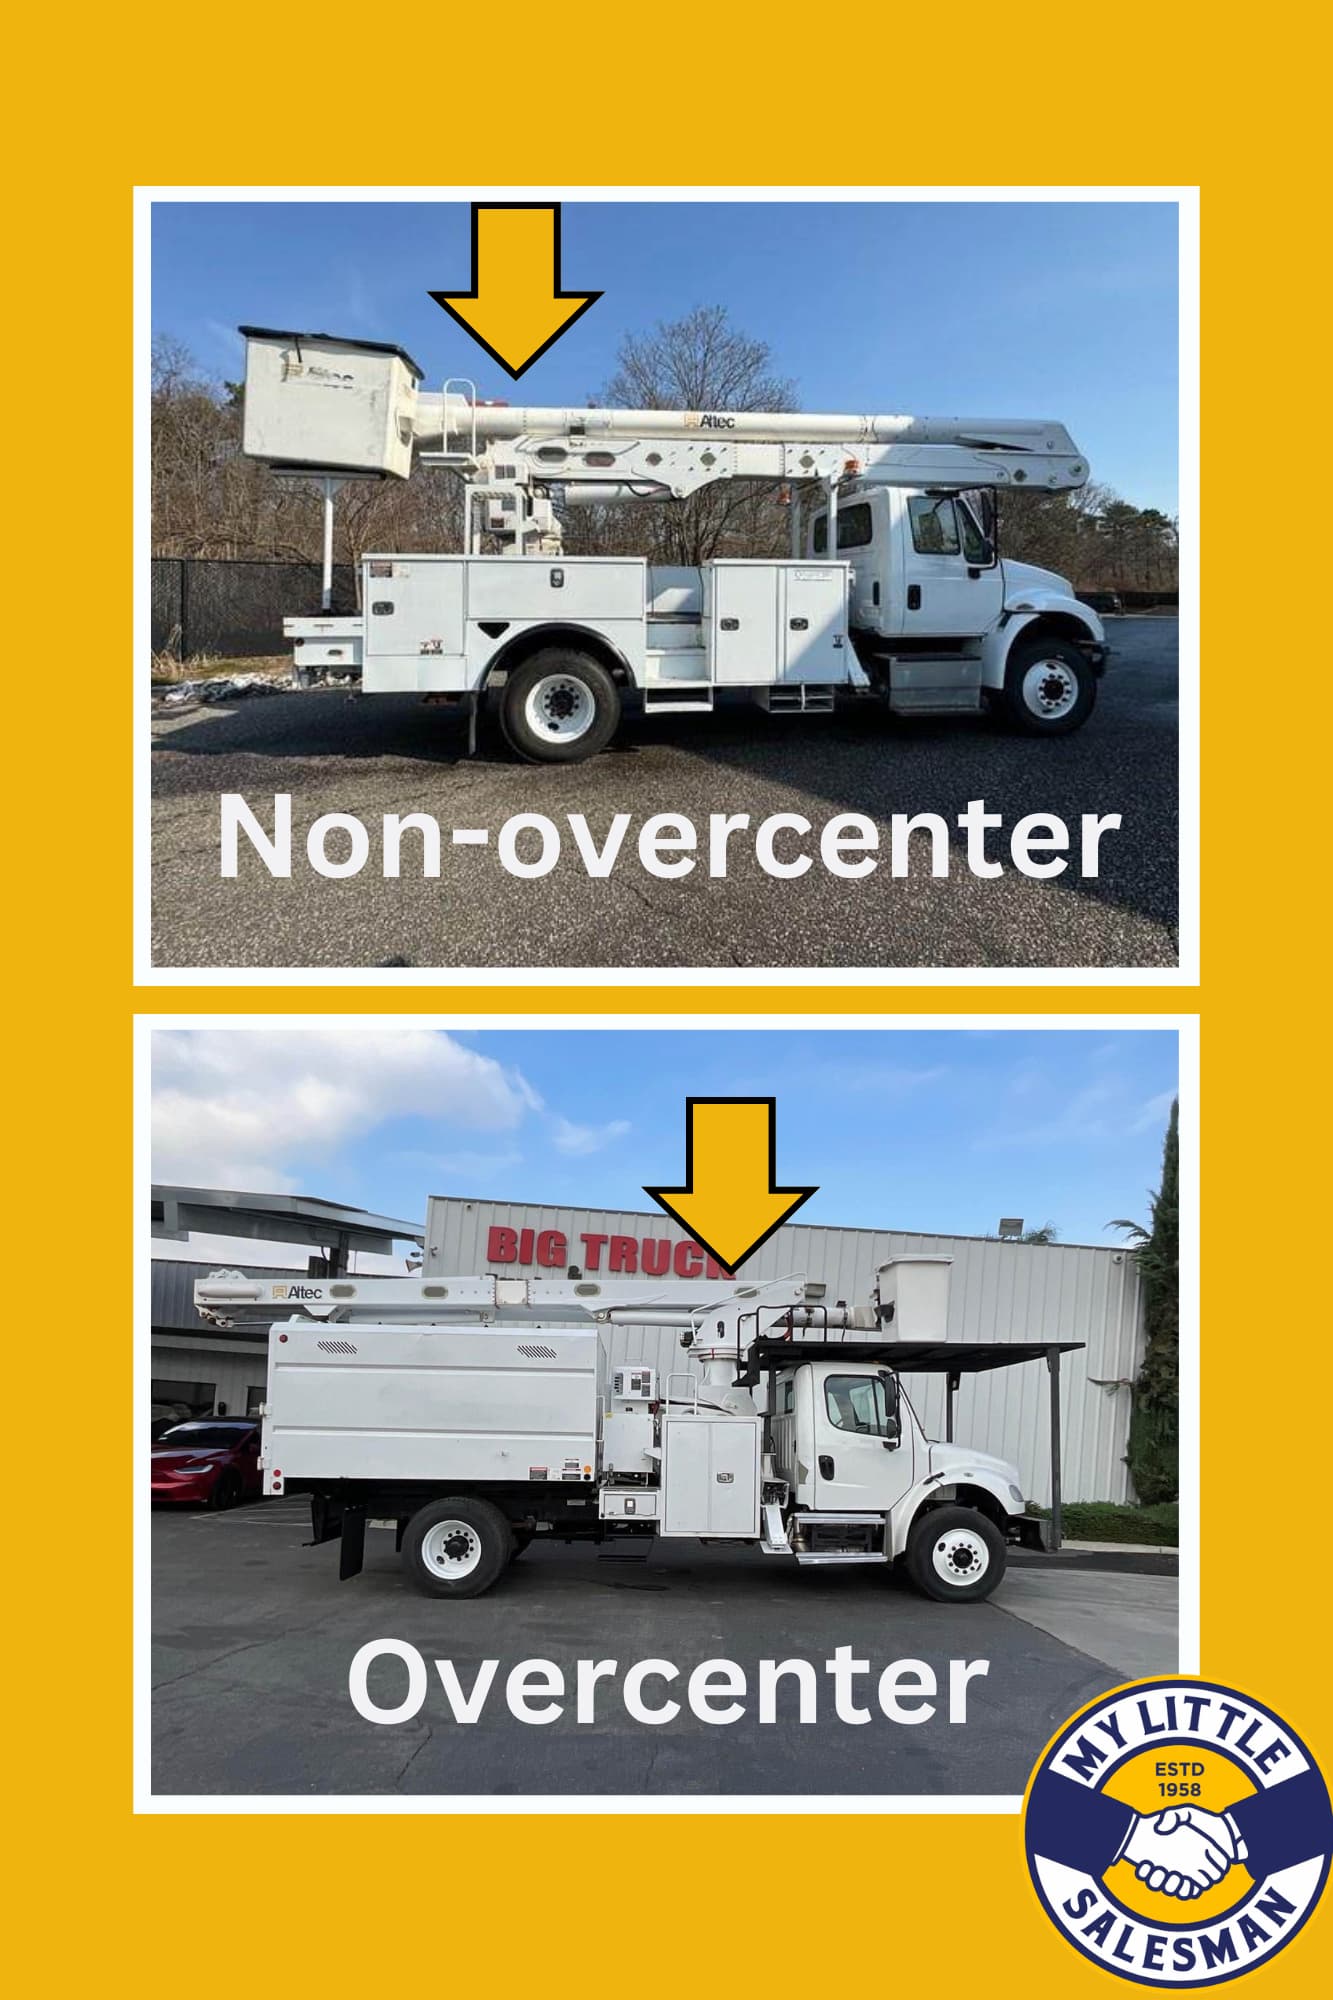 non-overcenter vs overcenter booms on bucket trucks